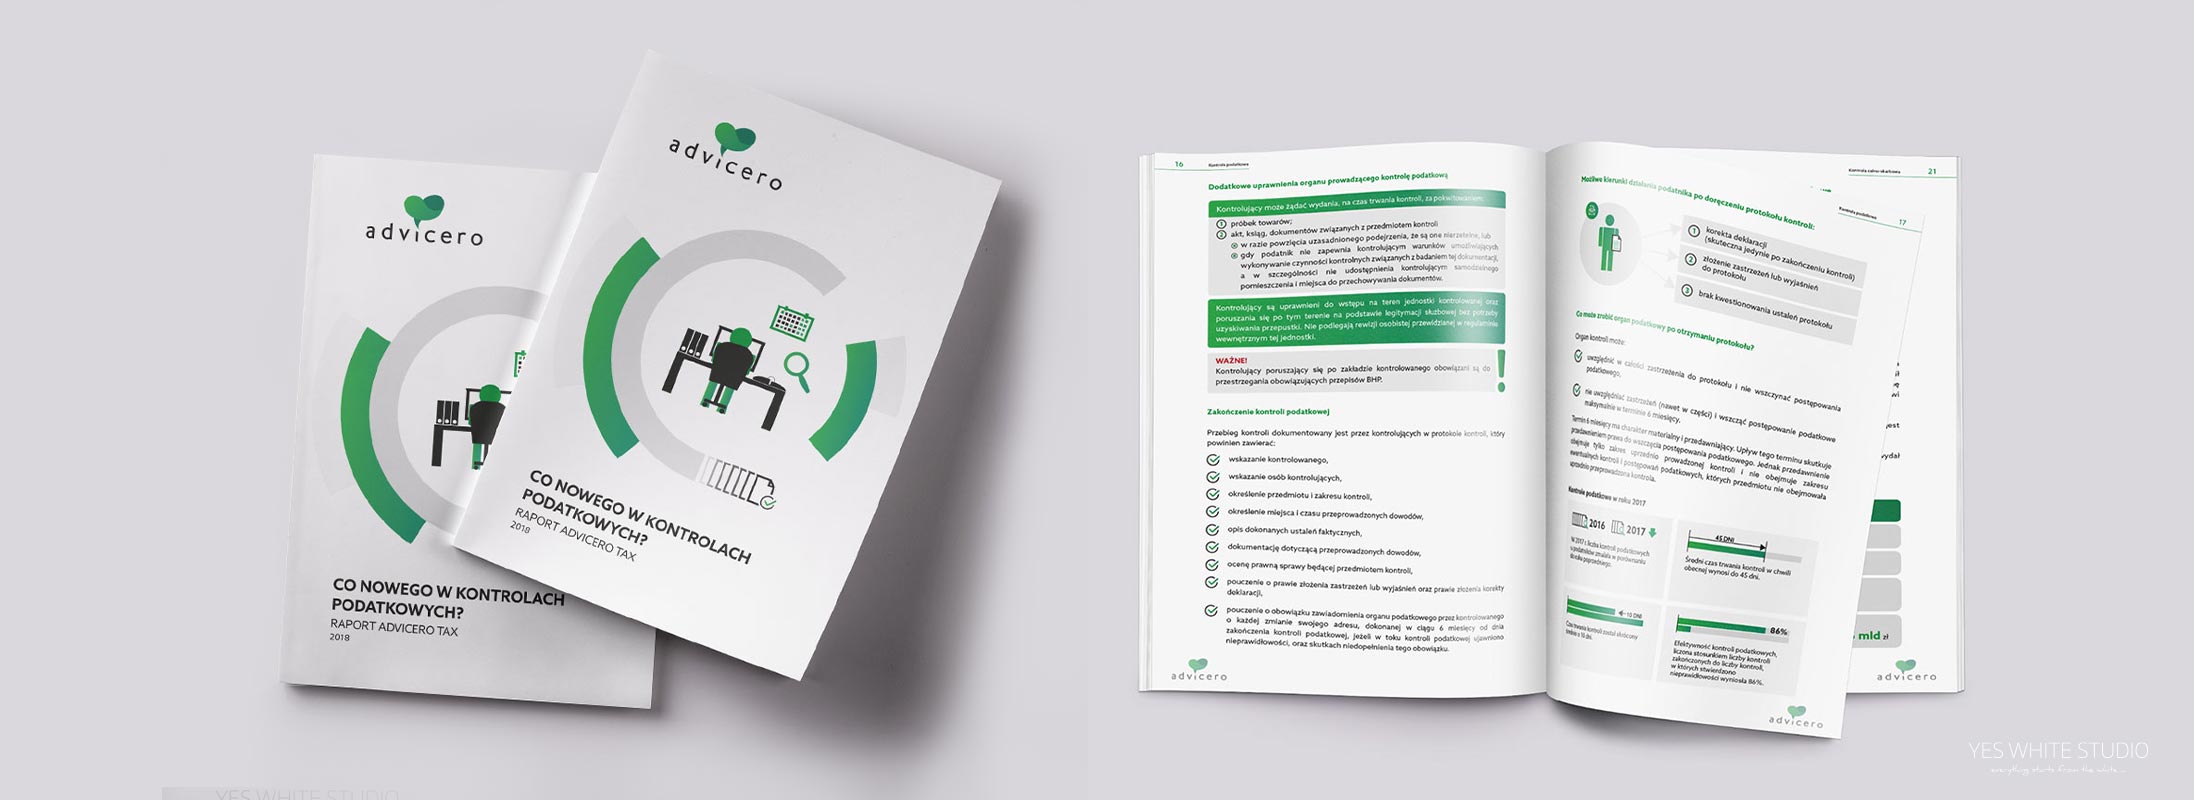 Projektowanie graficzne katalogów i broszur - projekt okładki broszury z infografikami Advicero